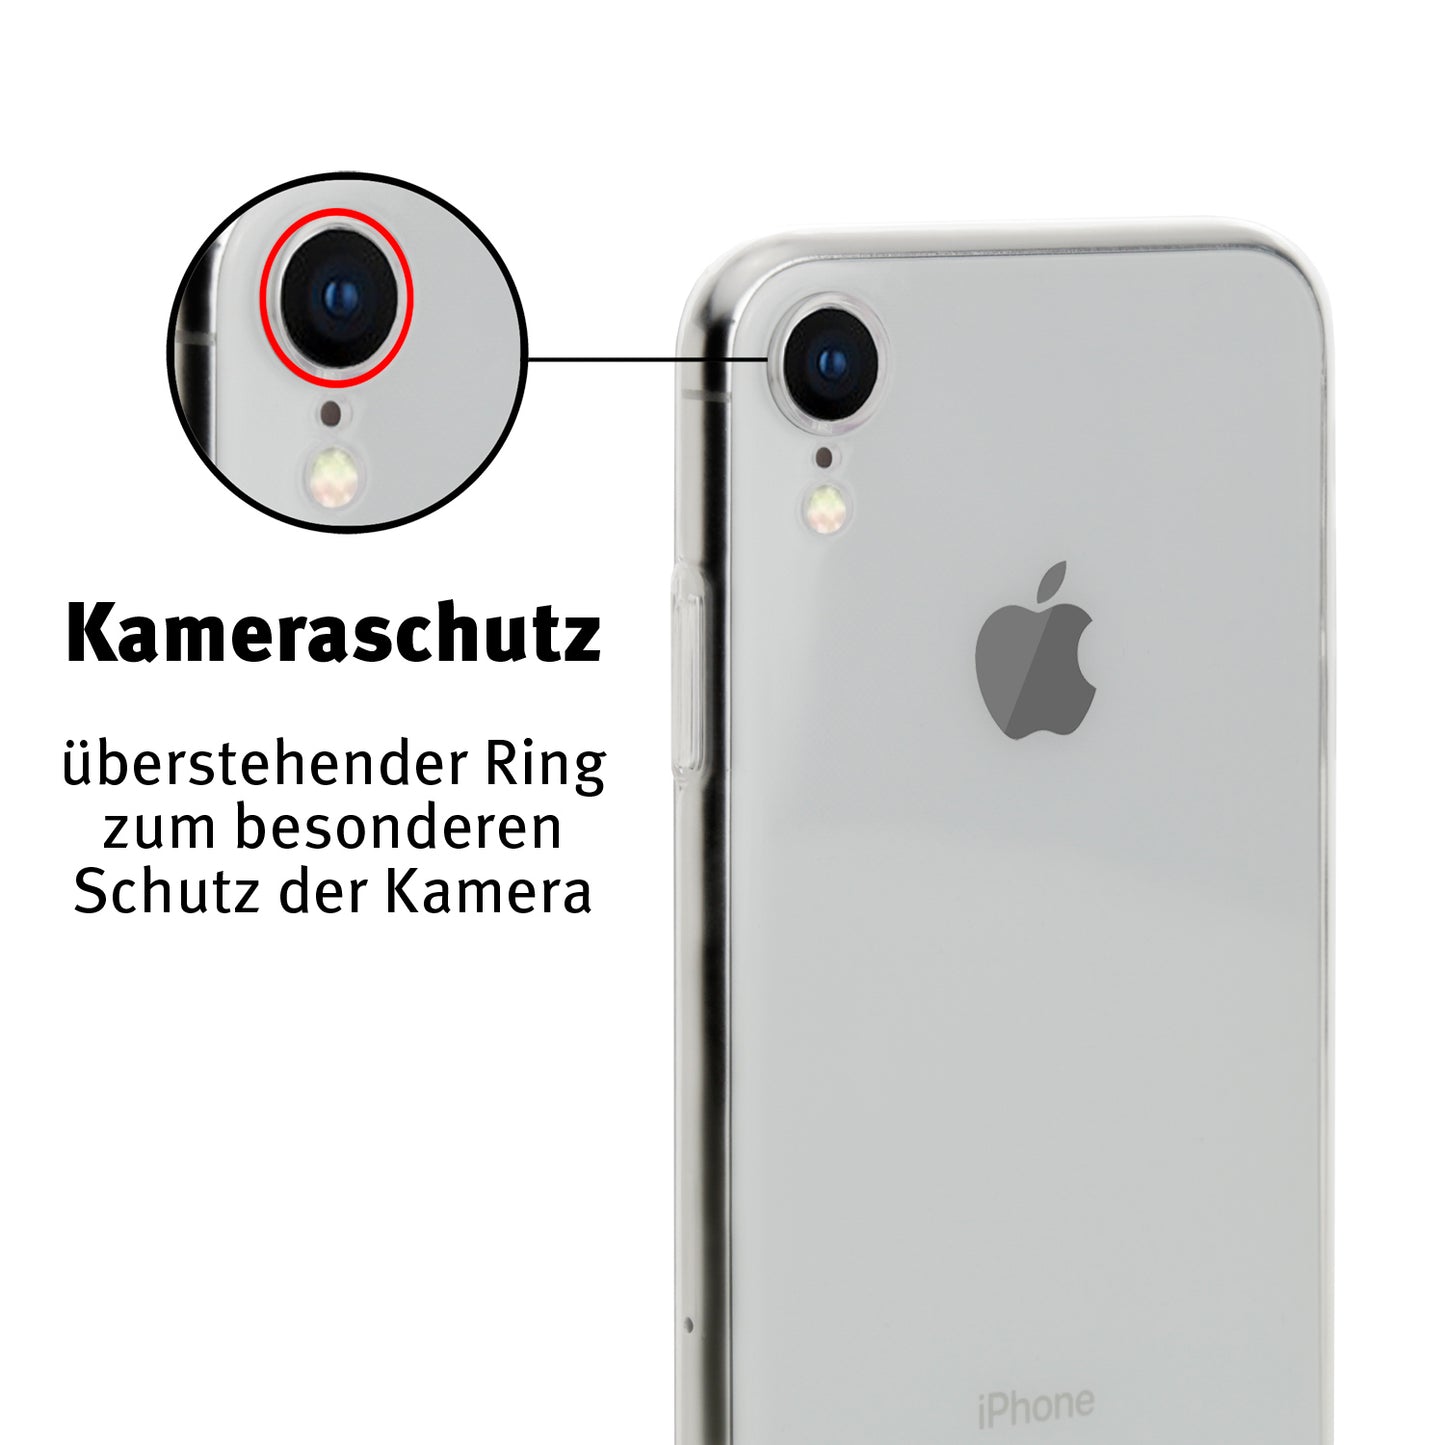 iphone-xc-schutzhuelleXea3sSkAlEGdu